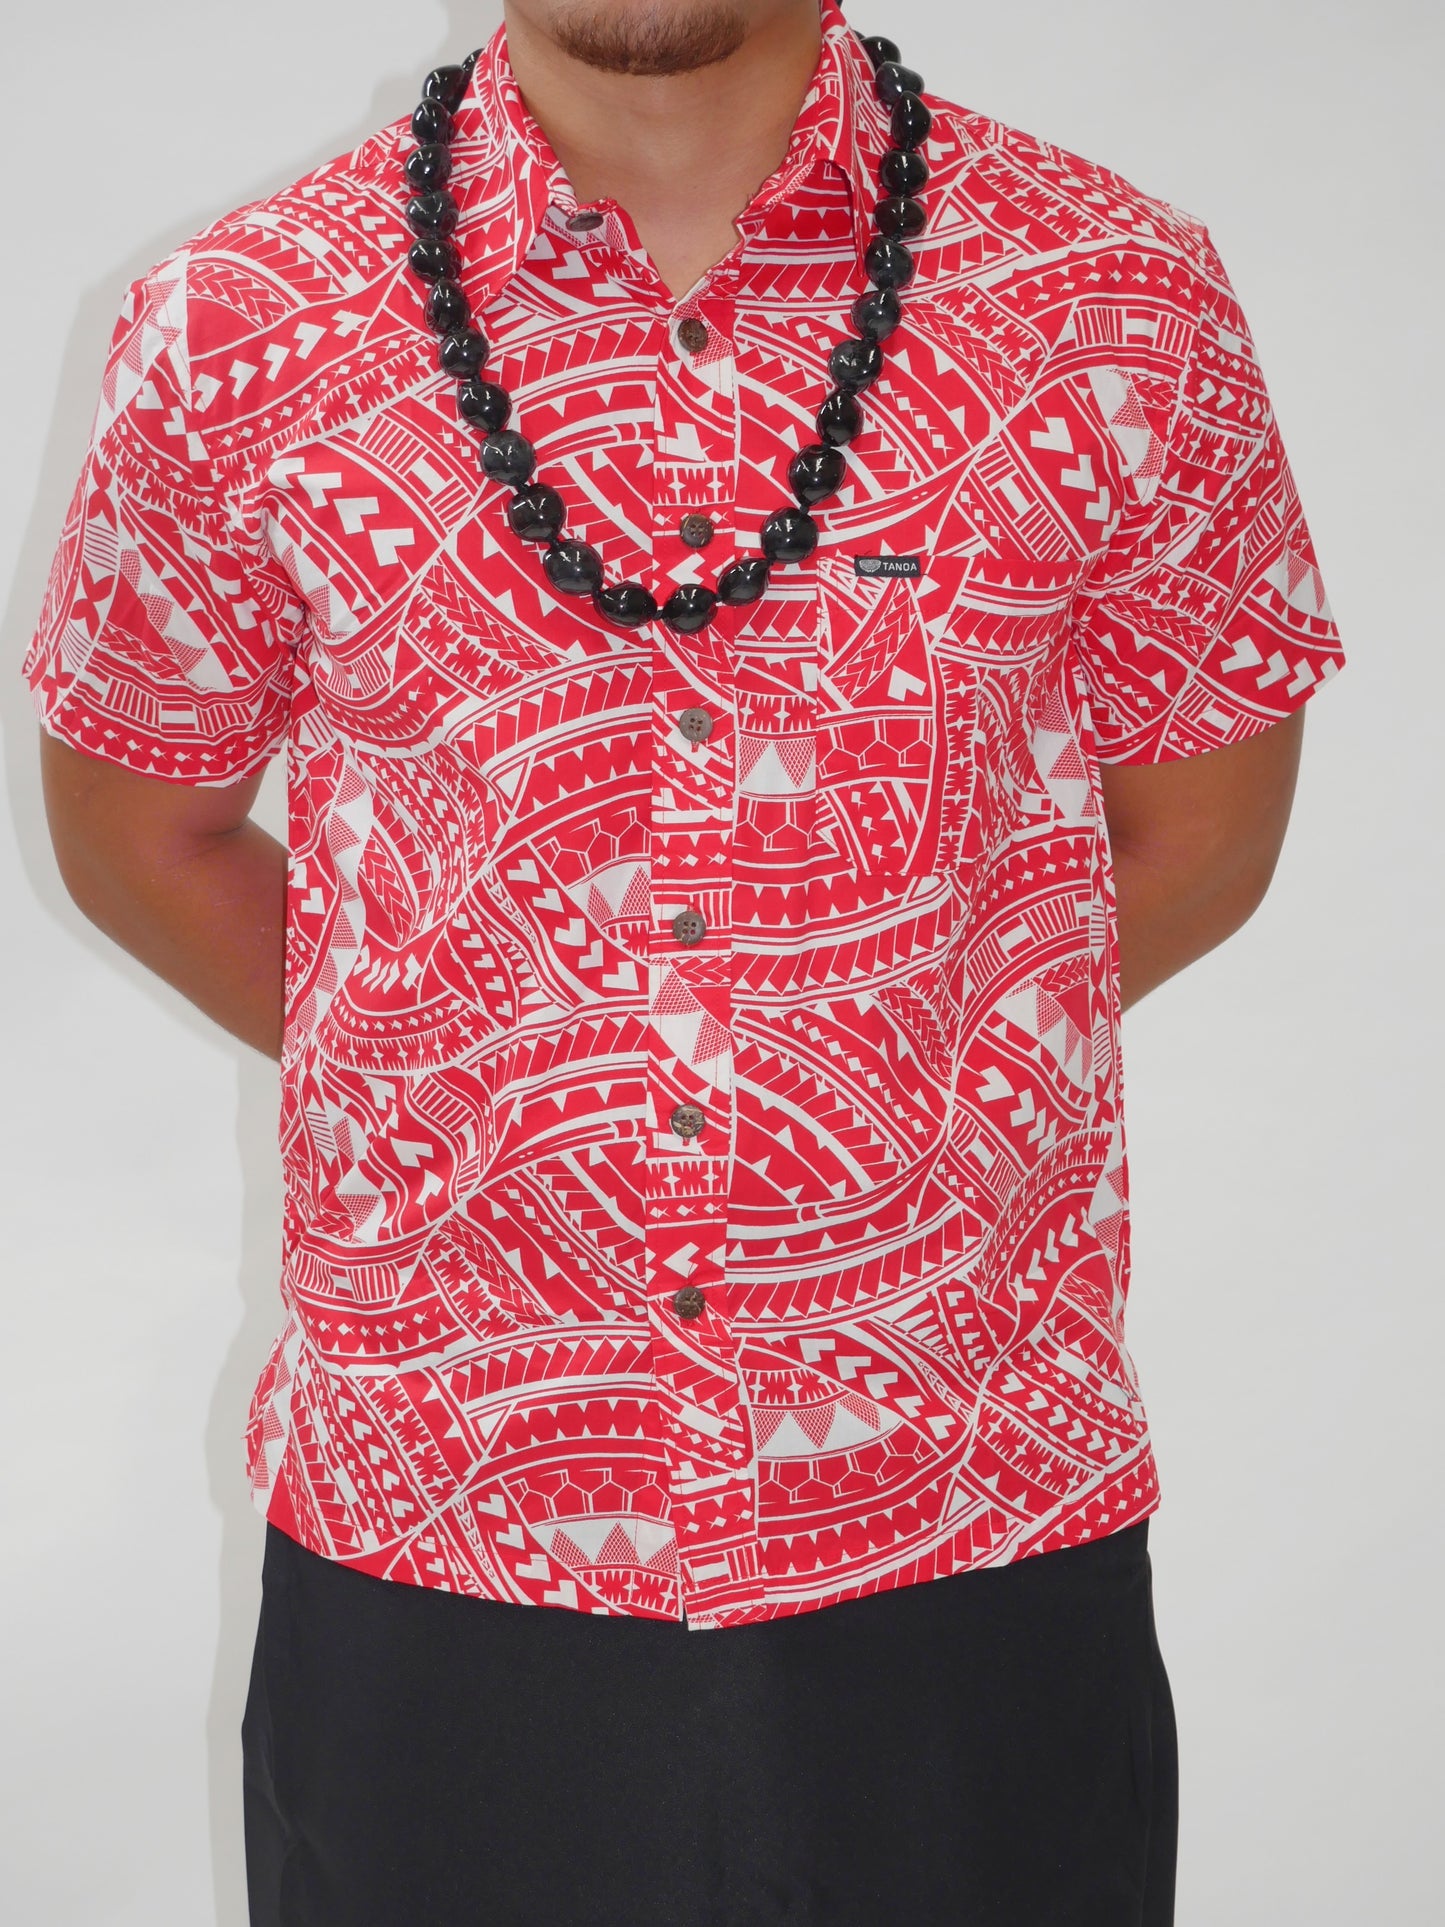 Tanoa Samoa Men's Shirt SS2802-TS New ( Red & White )